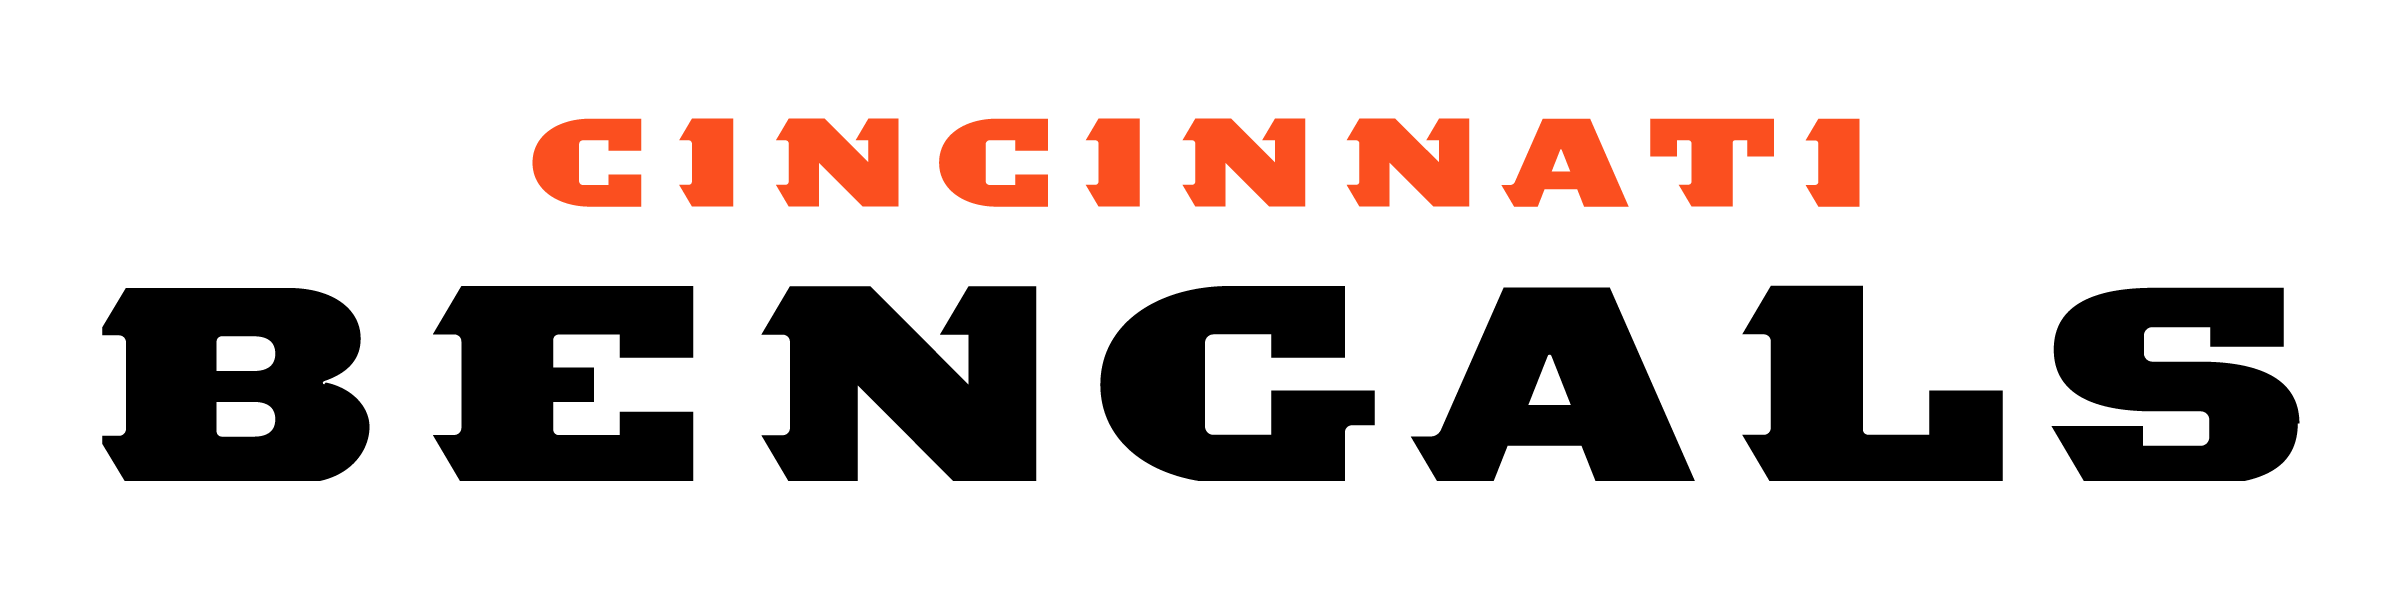 NFL Bengals Logo - Cincinnati Bengals Logo PNG Transparent & SVG Vector - Freebie Supply